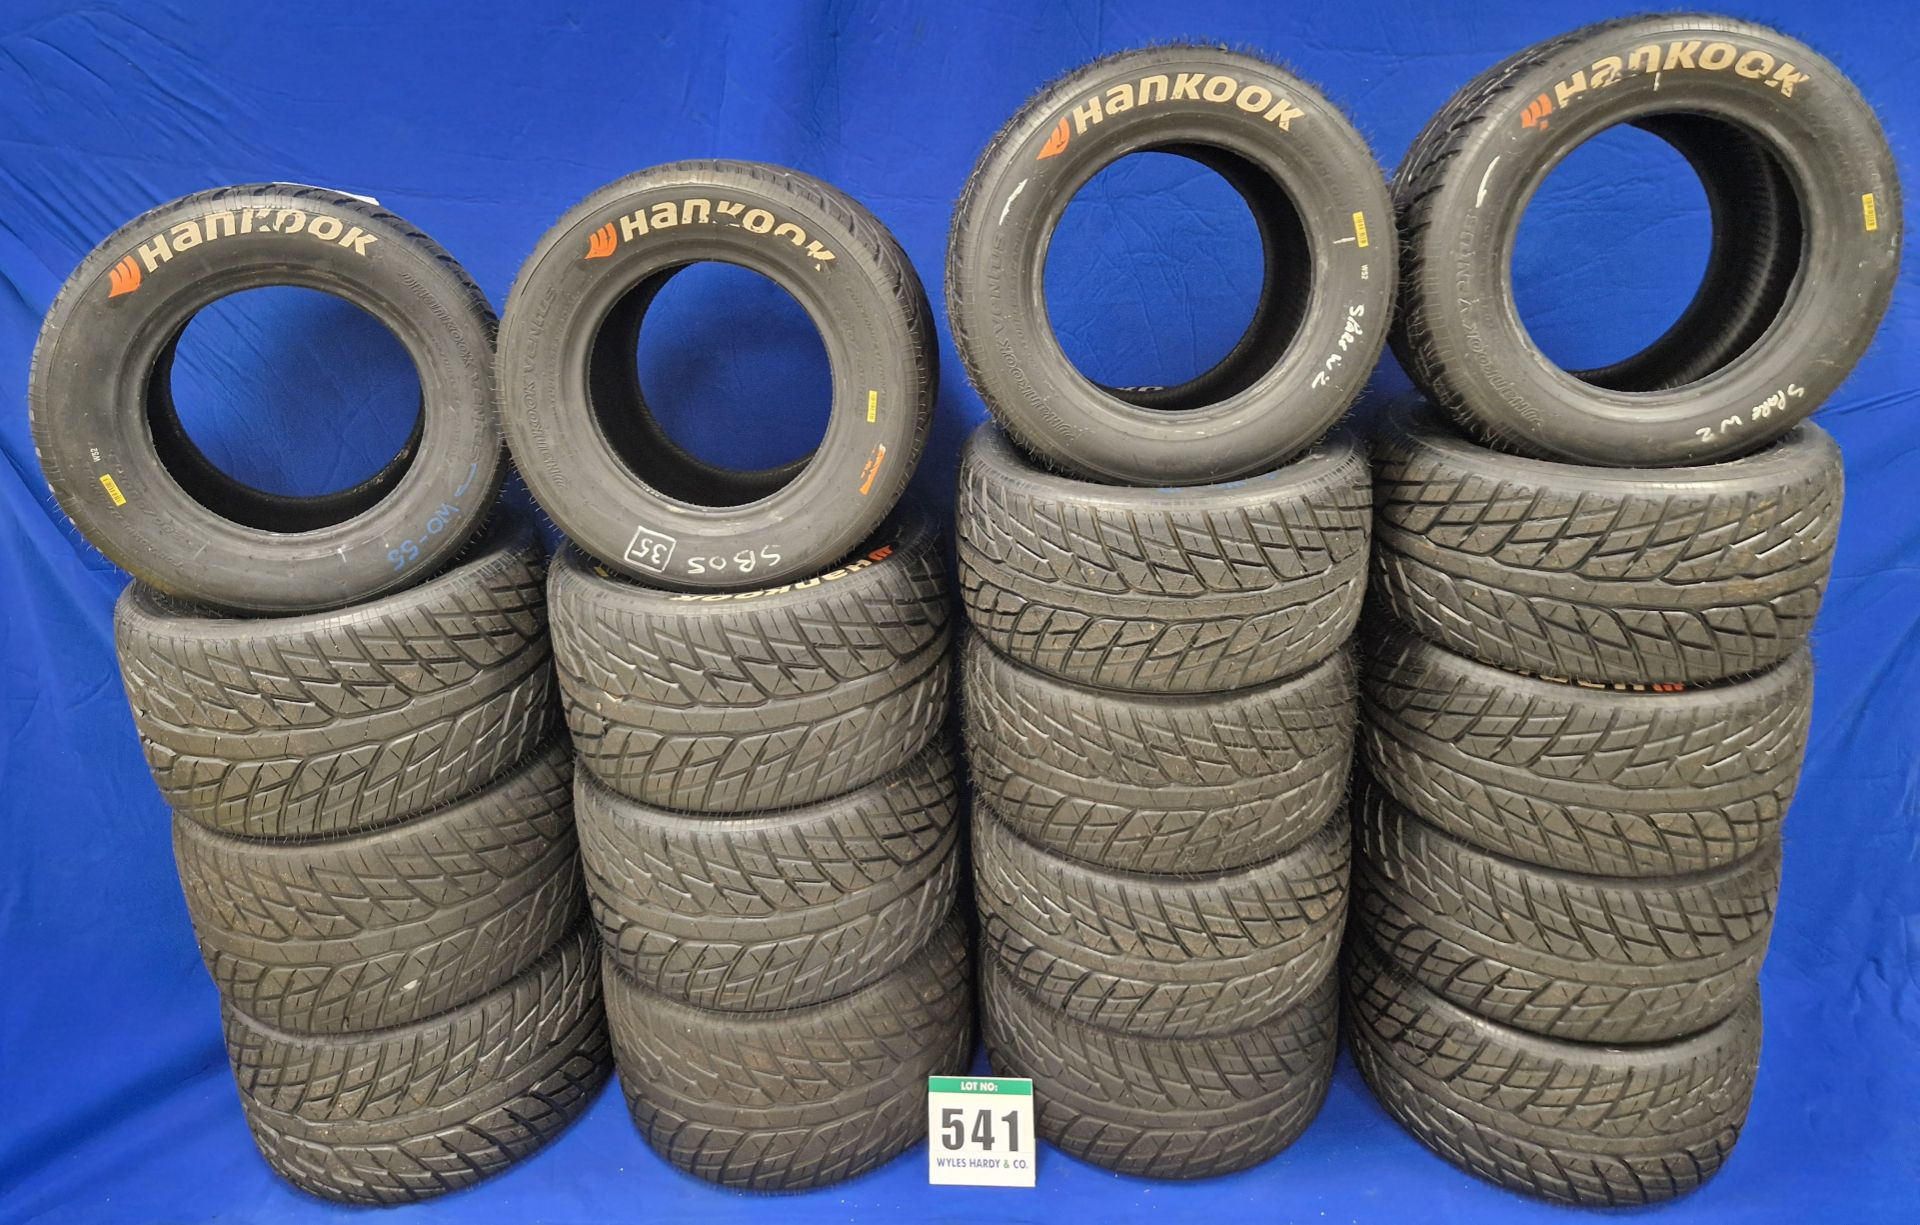 Ten HANKOOK 230/560 R13 Wet Racing Front Tyres and Eight HANKOOK 280/580 E13 Wet Racing Rear